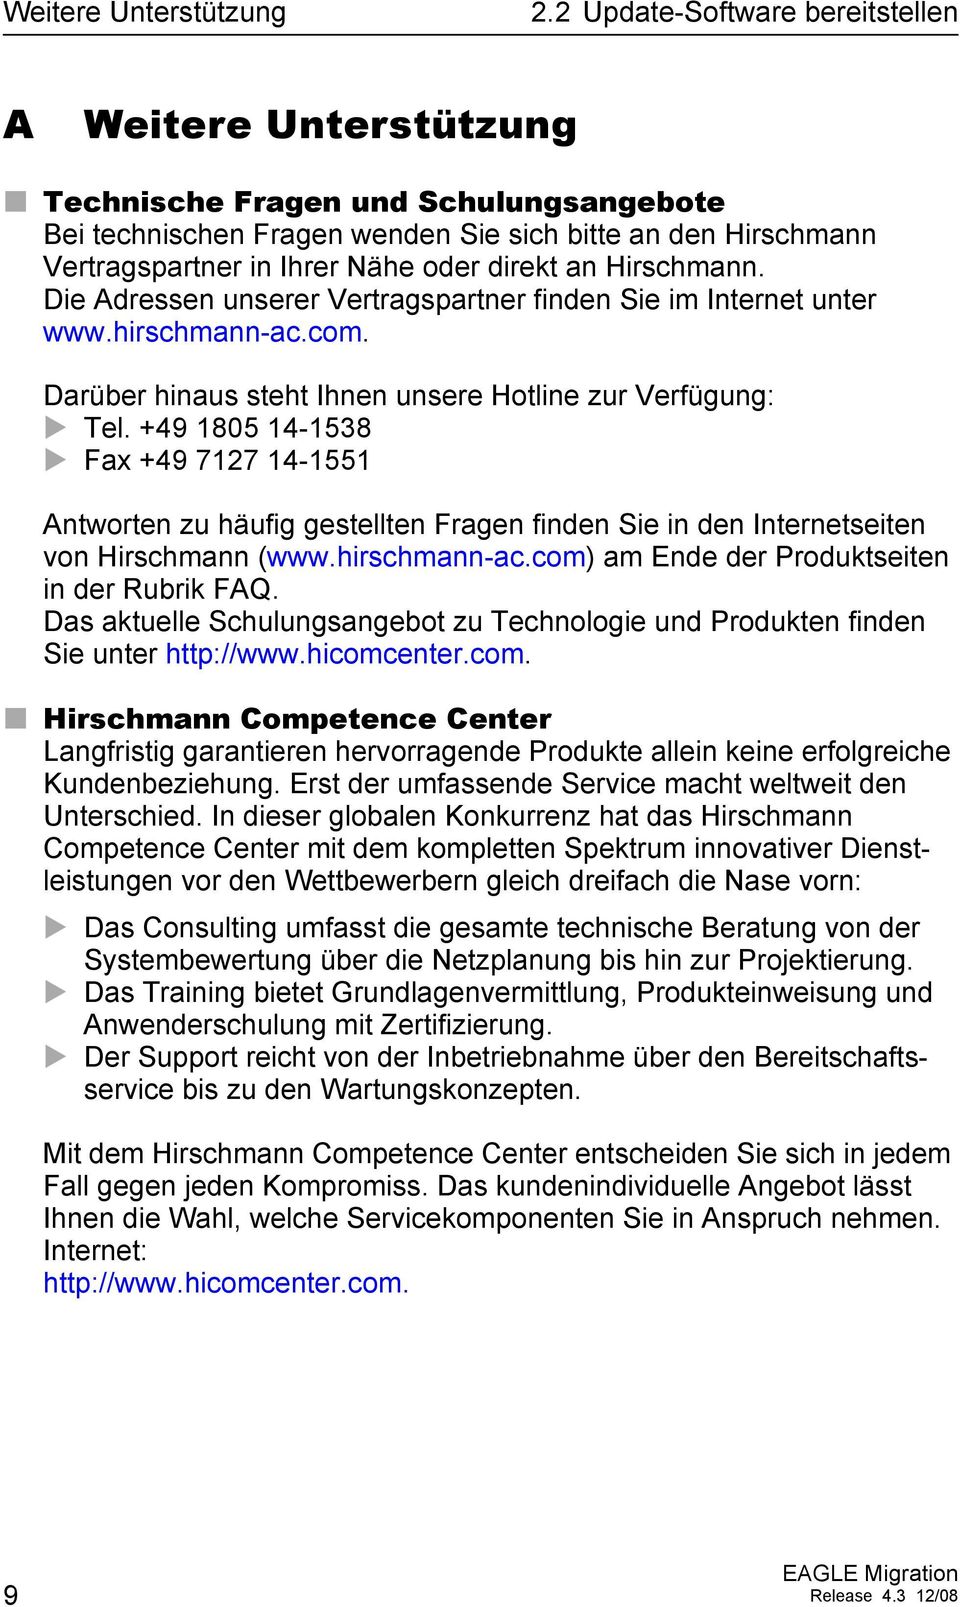 +49 1805 14-1538 Fax +49 7127 14-1551 Antworten zu häufig gestellten Fragen finden Sie in den Internetseiten von Hirschmann (www.hirschmann-ac.com) am Ende der Produktseiten in der Rubrik FAQ.